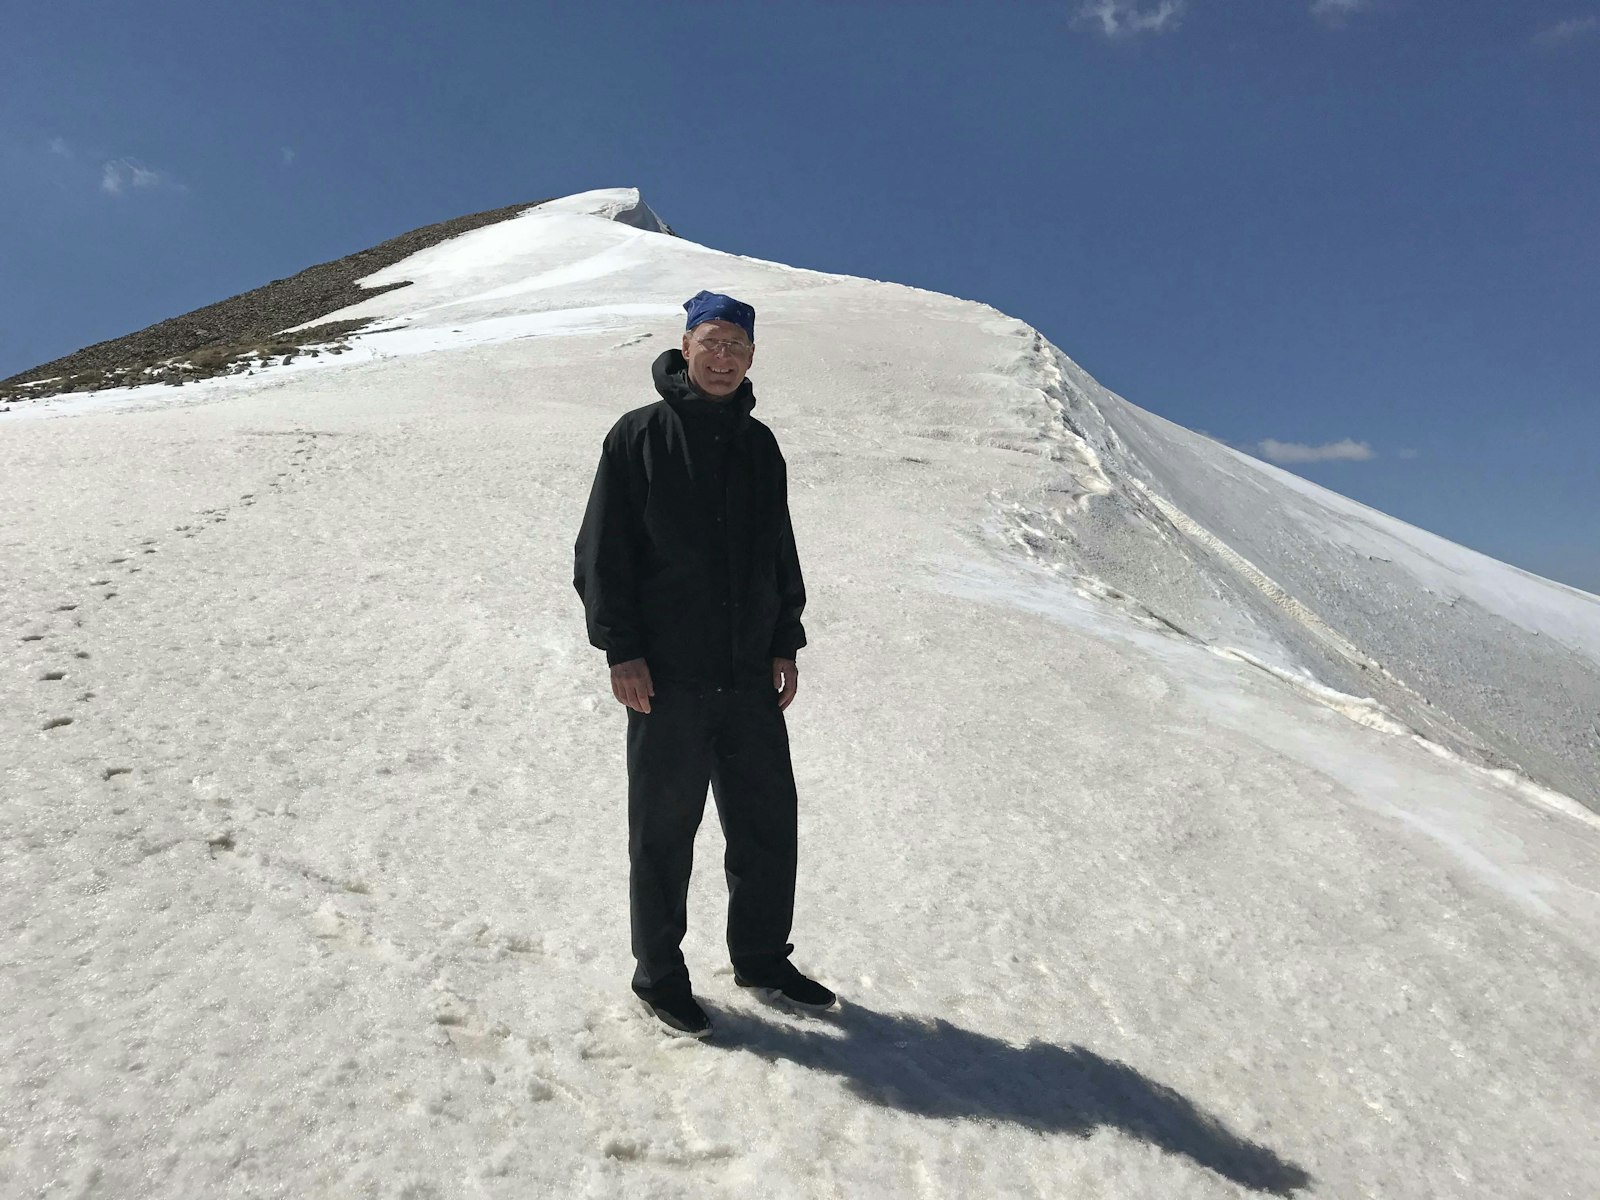 El arzobispo Russell aparece en la foto subiendo a la cima del monte Sulbus, en el distrito de Yayladere de la provincia de Bingöl (Turquía), a una altura de 12.740 pies sobre el nivel del mar.